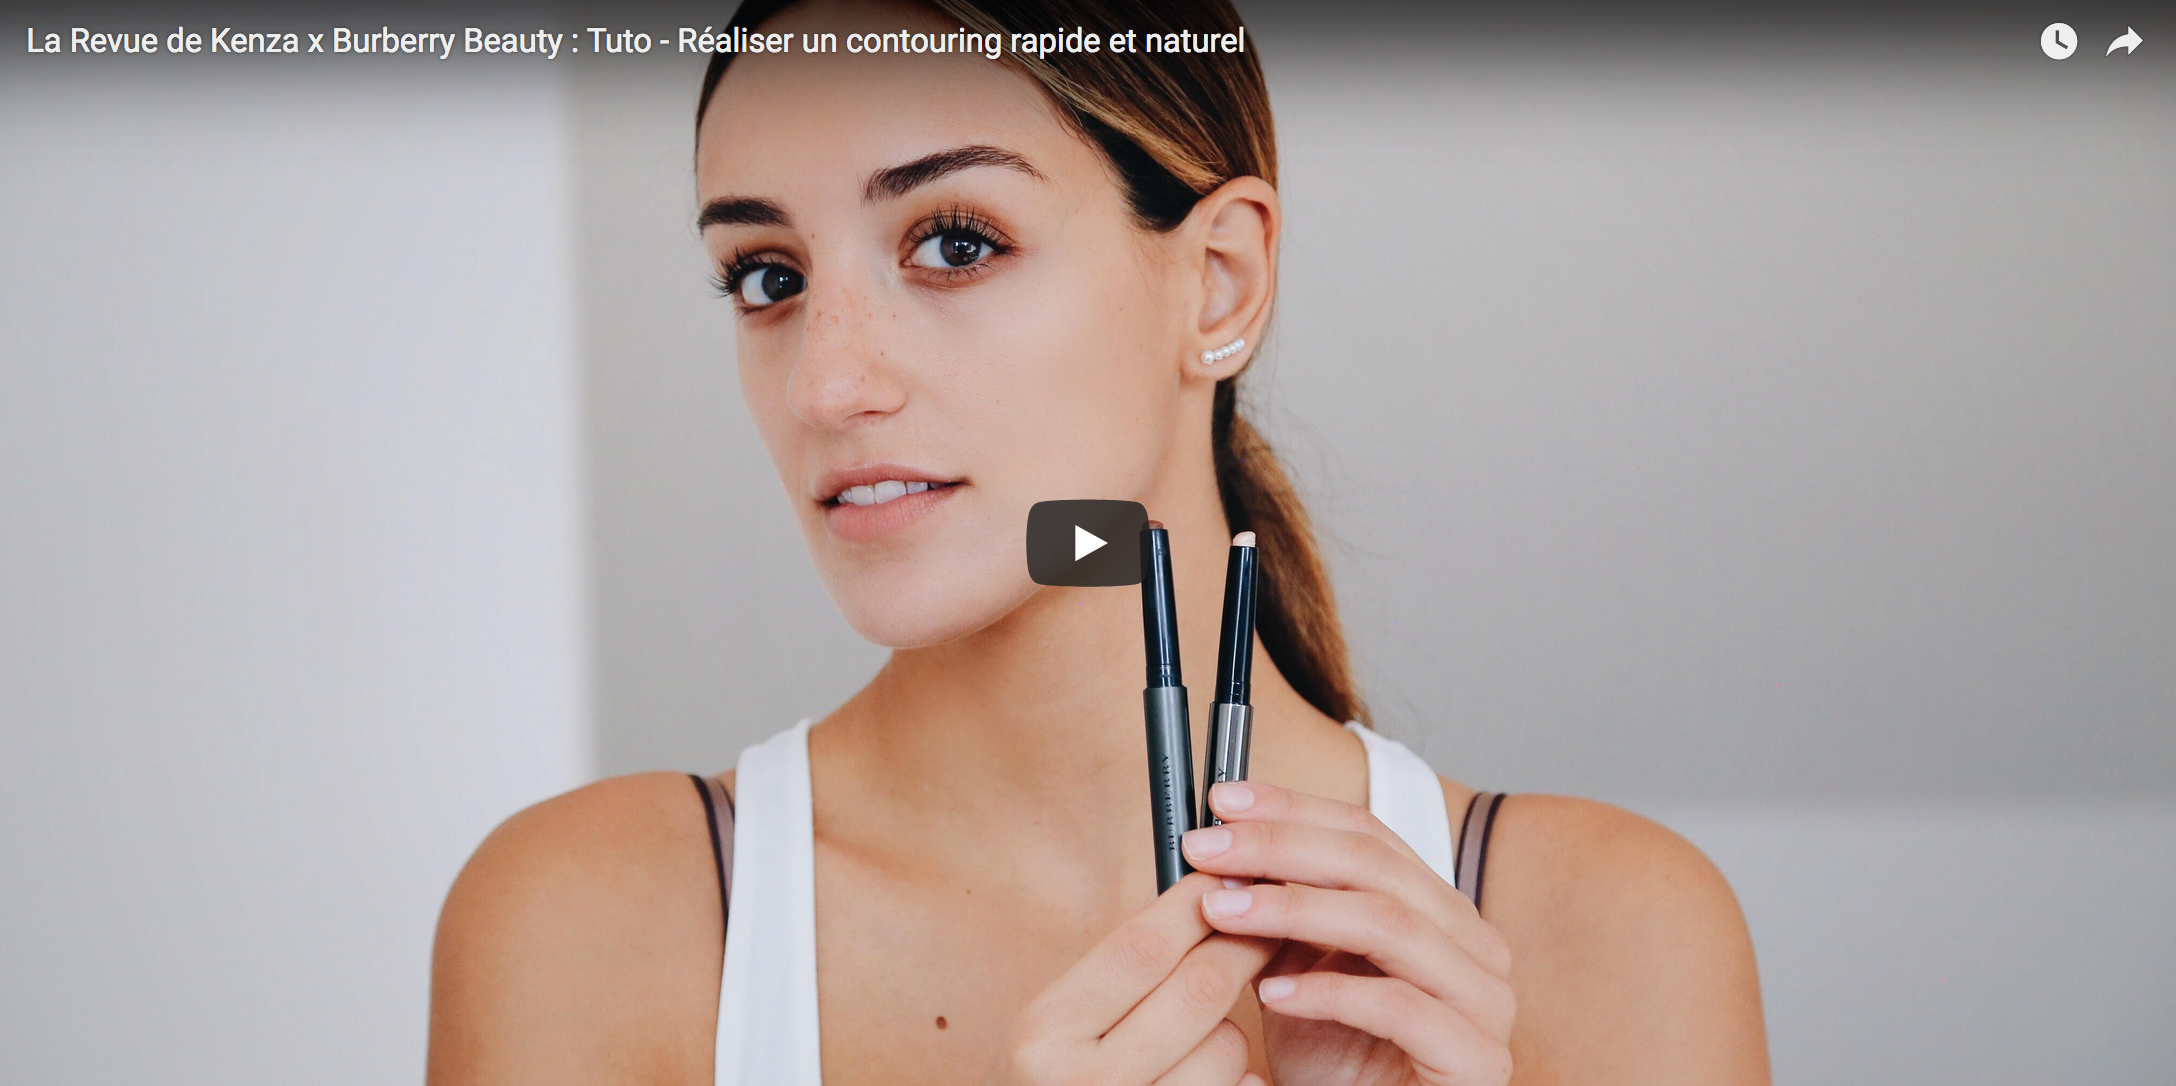 Tutorial vidéo (Burberry Beauty) : Réaliser un contouring